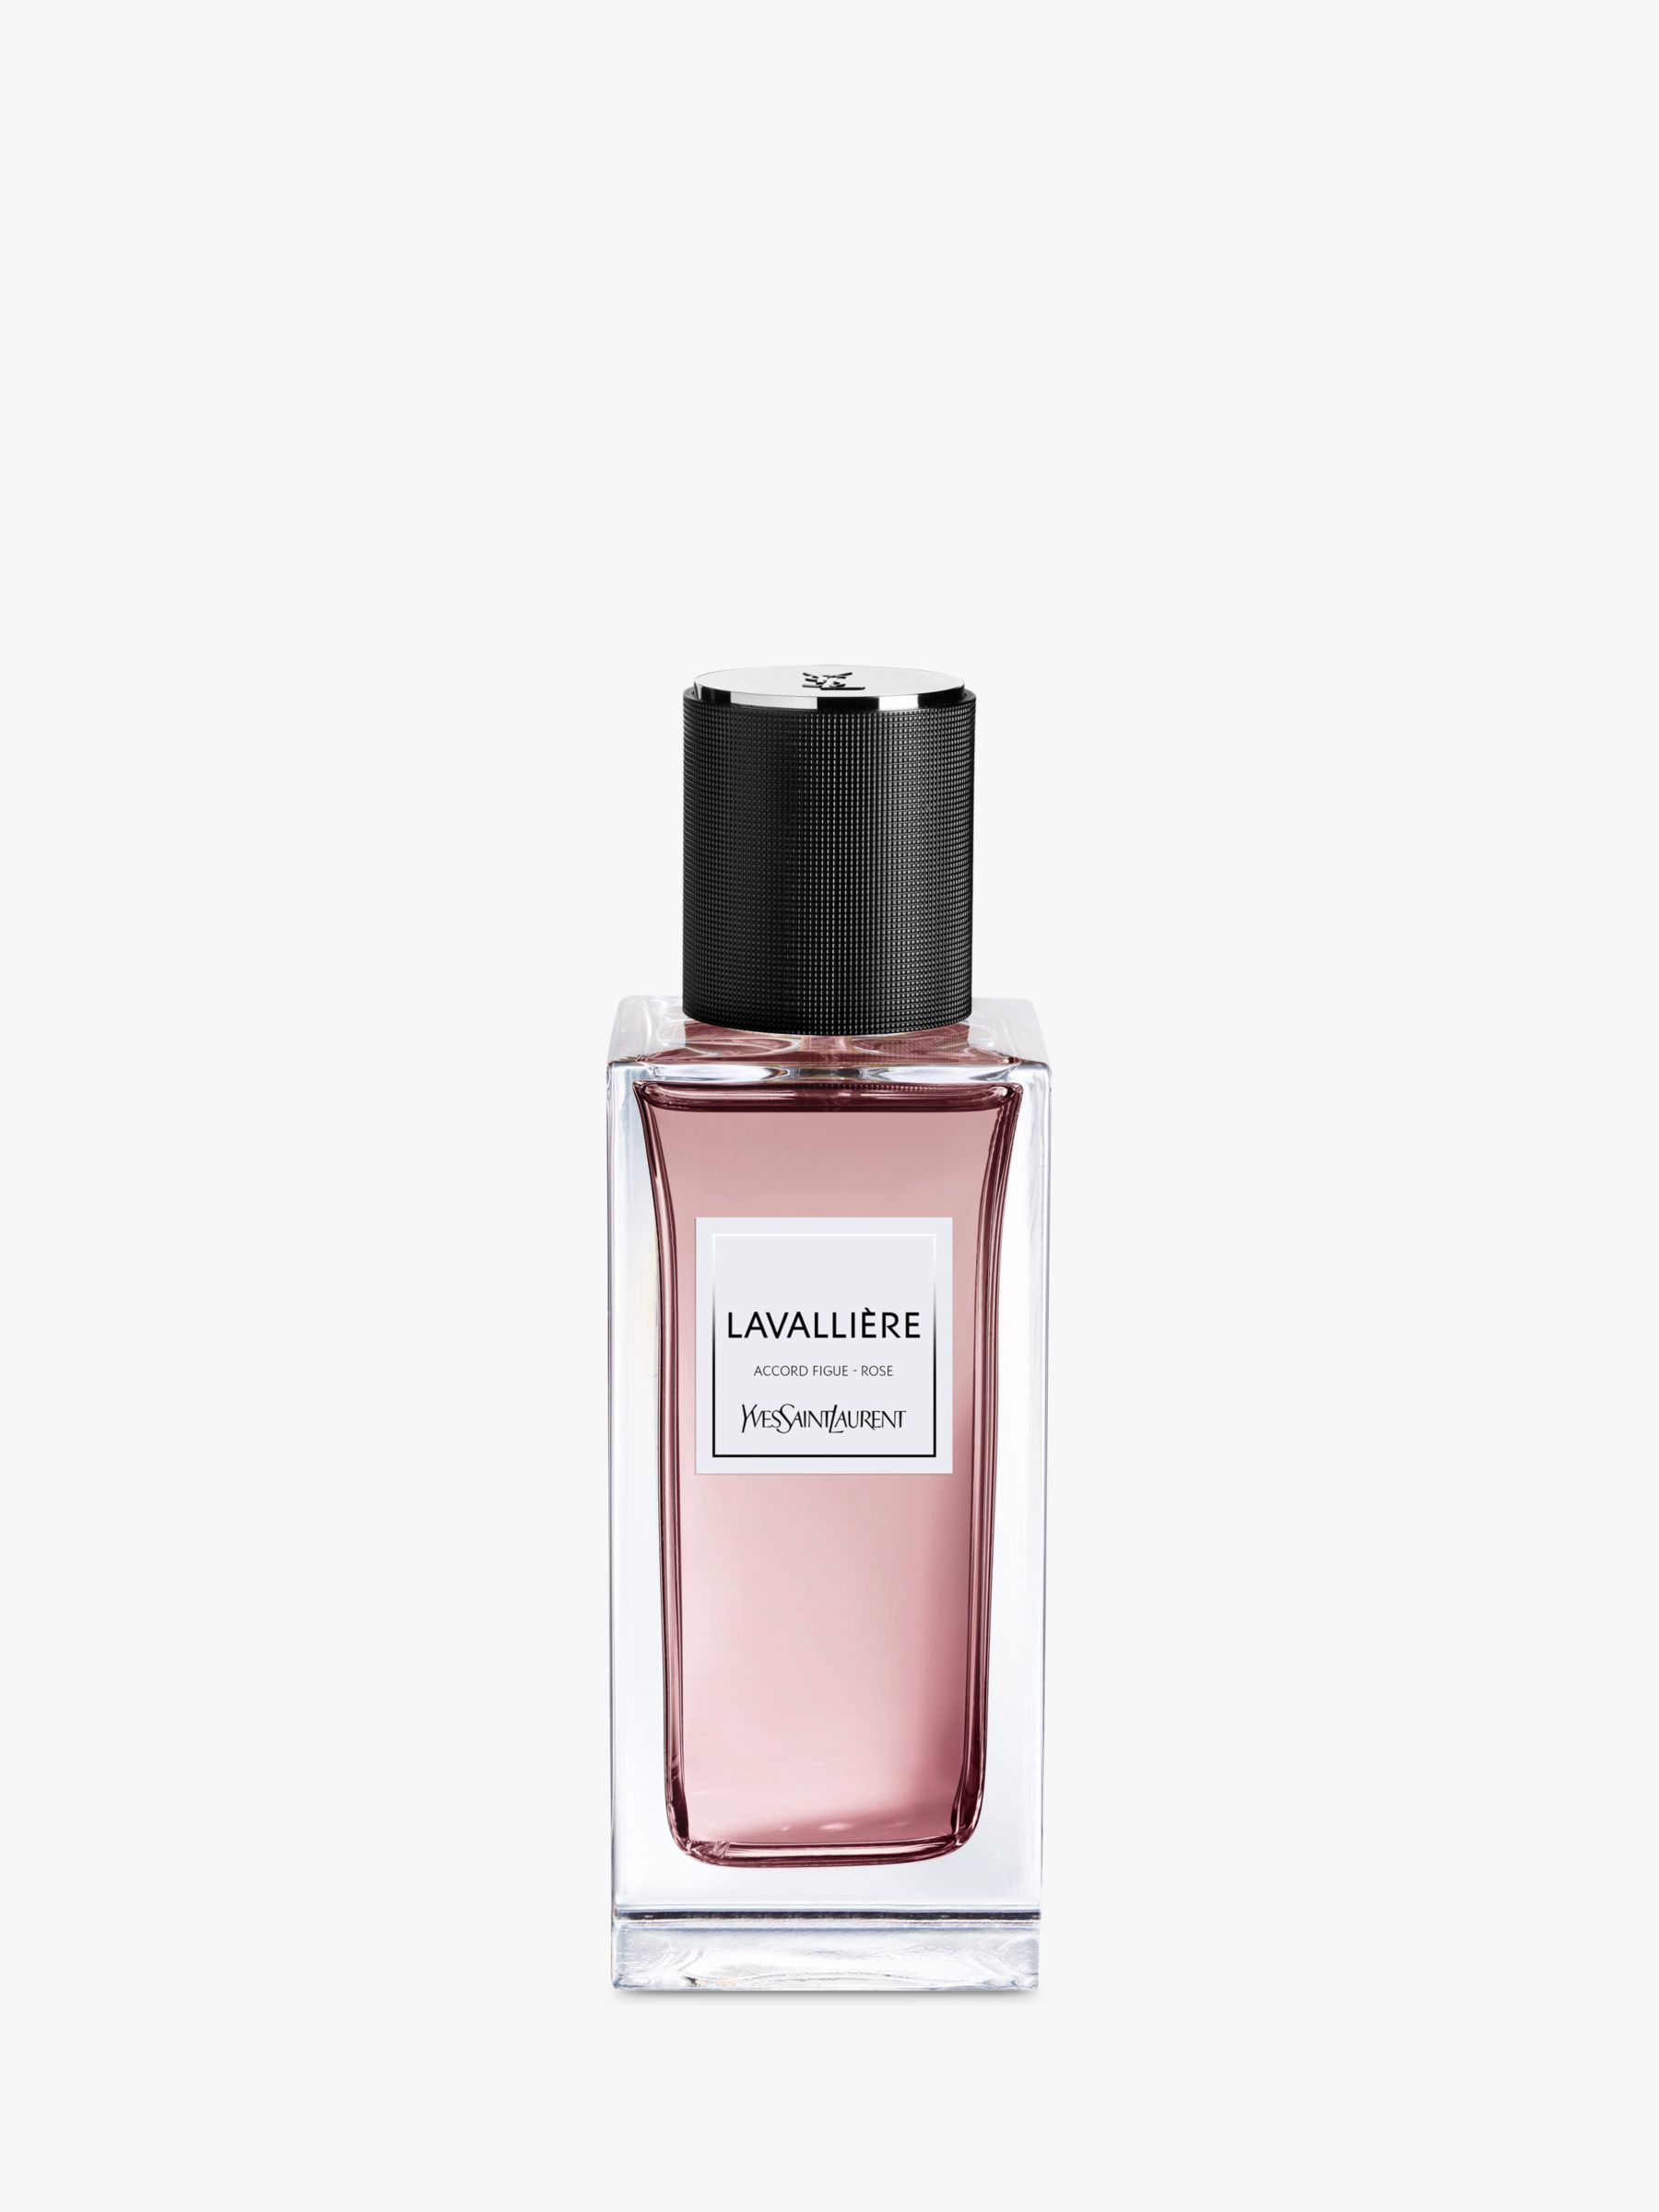 Yves Saint Laurent Lavalliere Eau de Parfum, 125ml at John Lewis & Partners